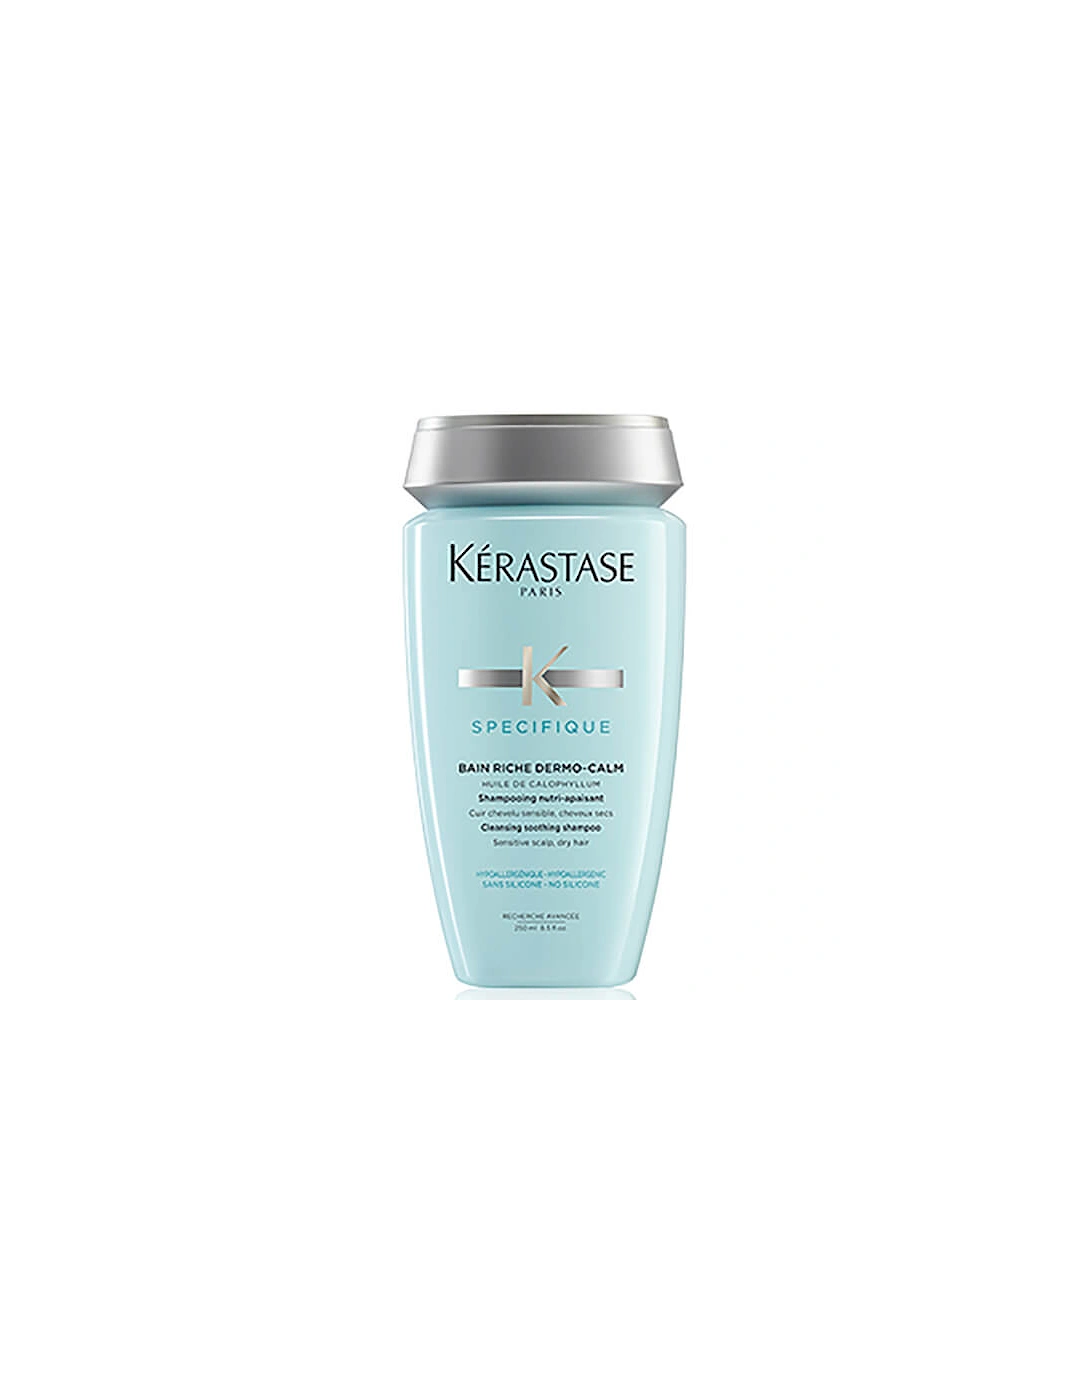 Kérastase Specifique Dermo-Calm Bain Riche Shampoo 250ml - Kerastase, 2 of 1